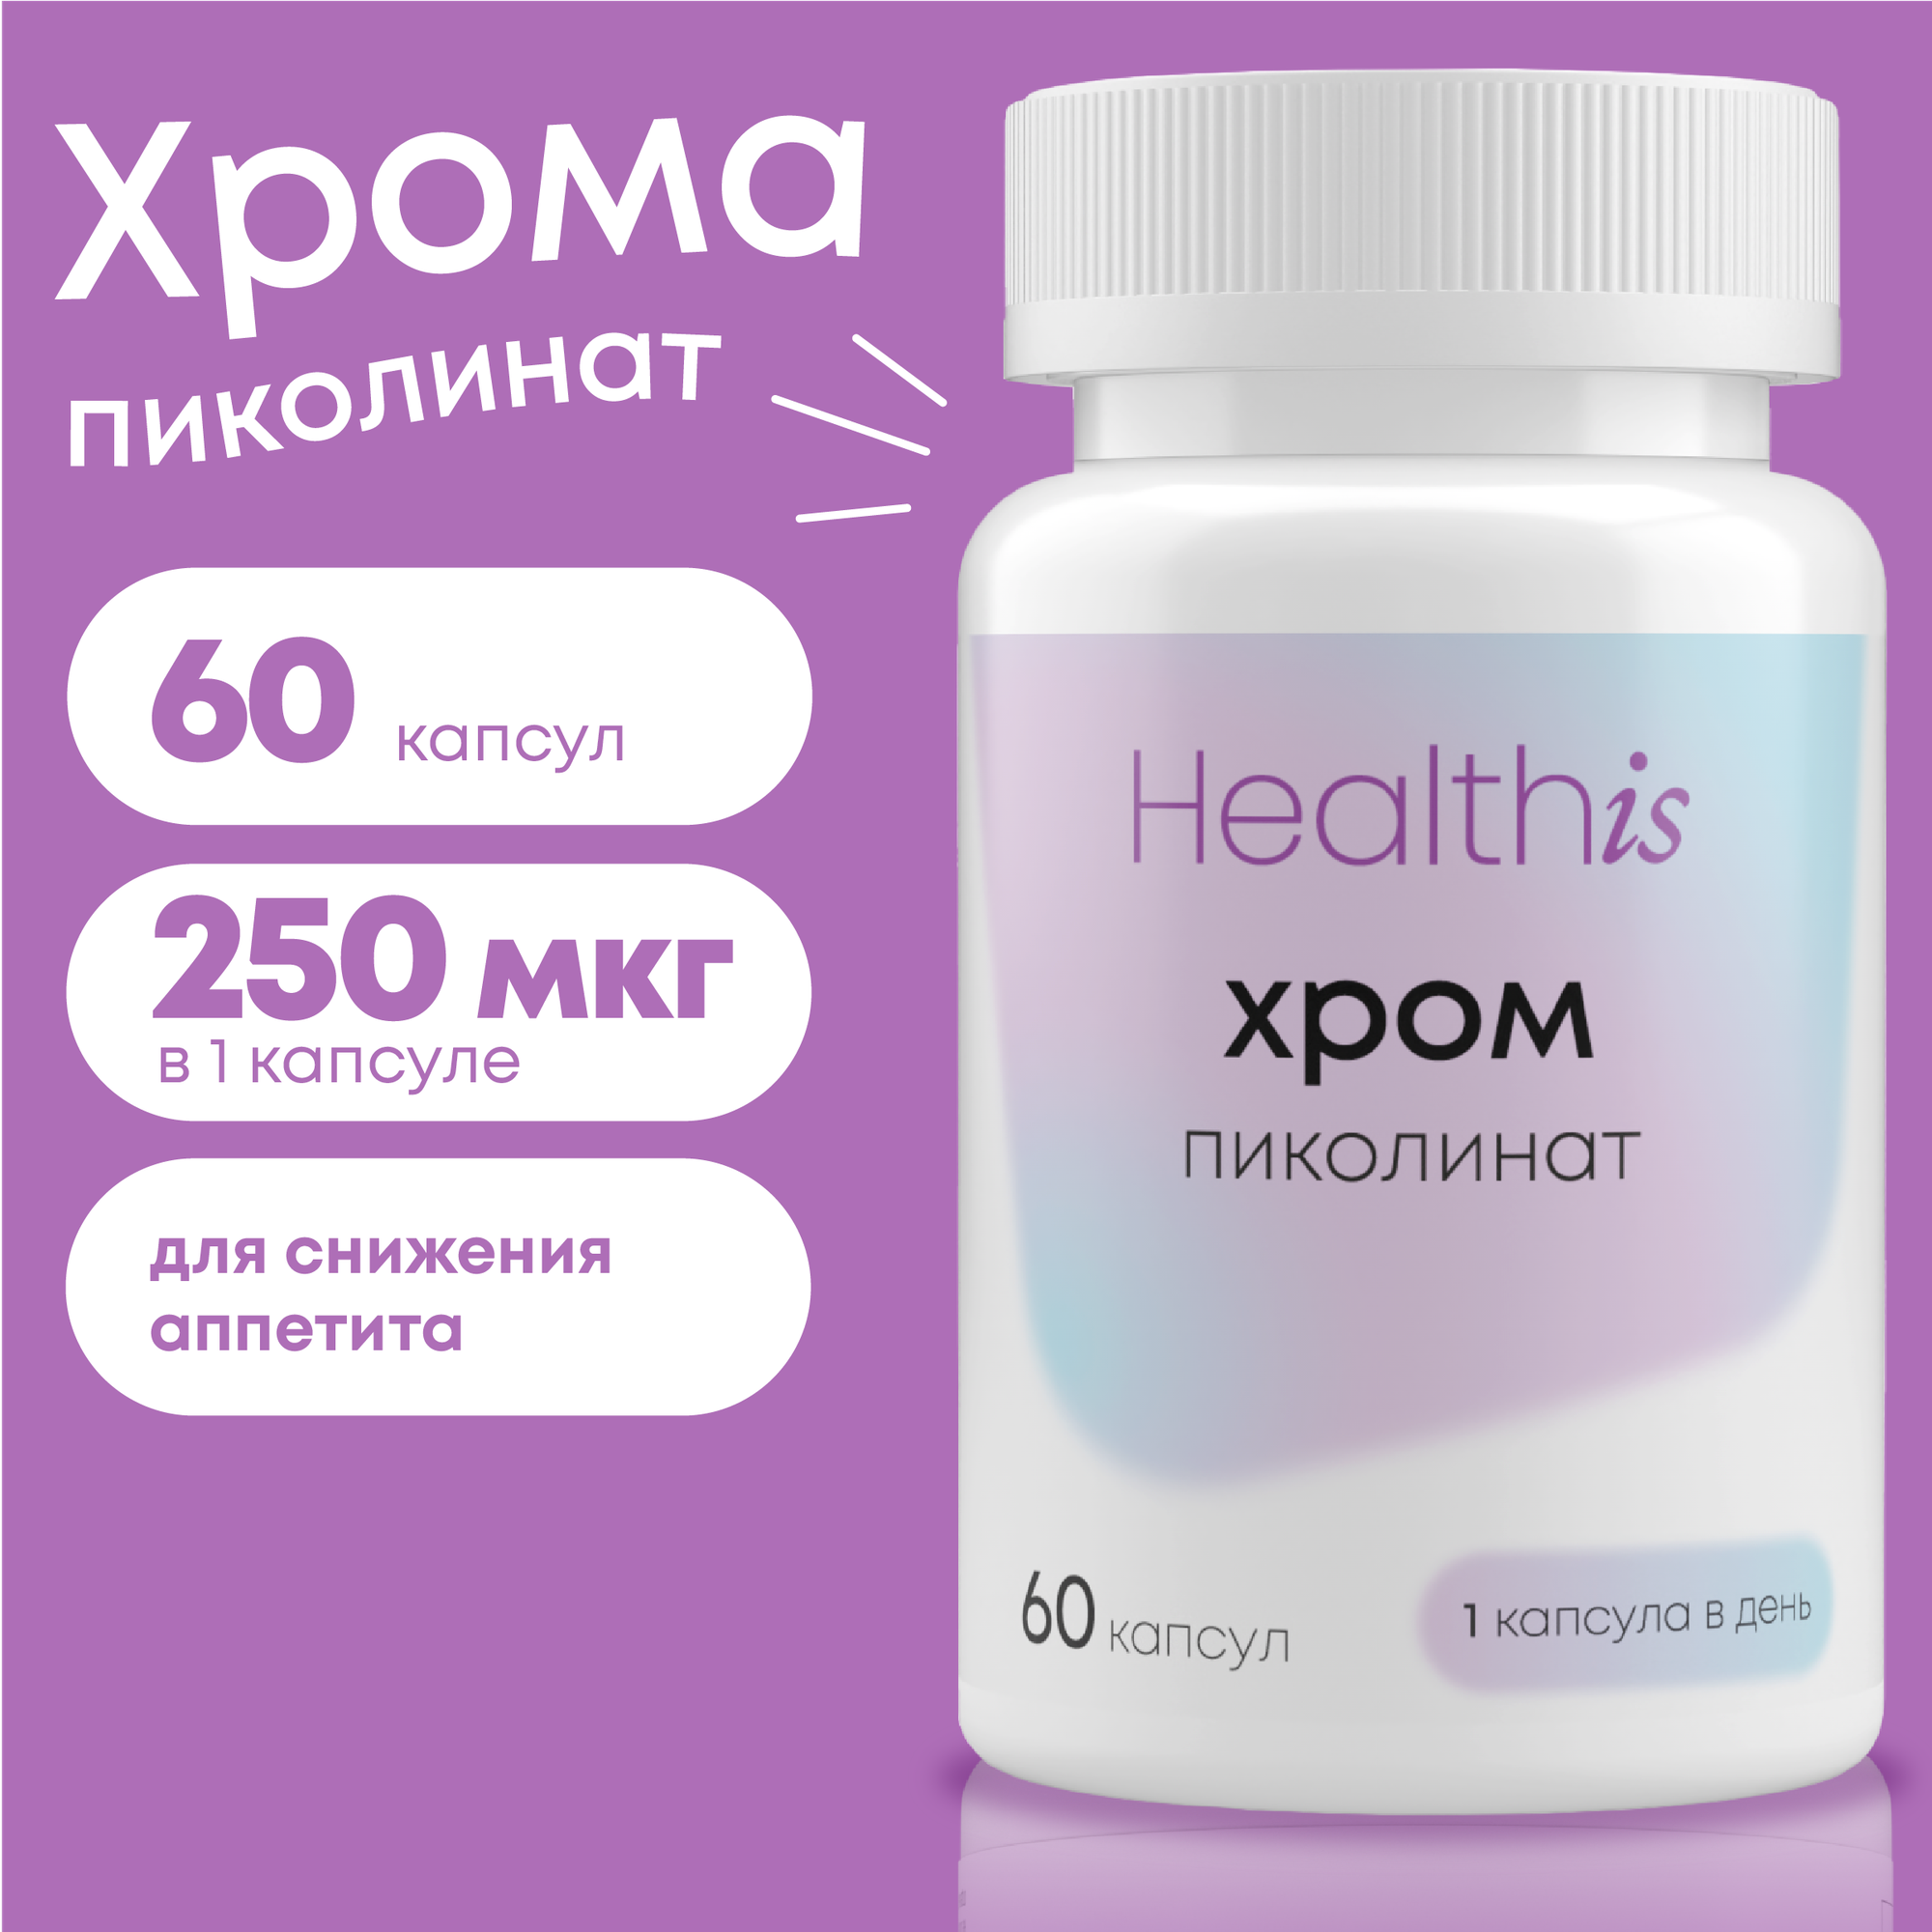 Хром пиколинат, БАД для похудения и снижения аппетита, 60 капсул, 250мкг, chromium